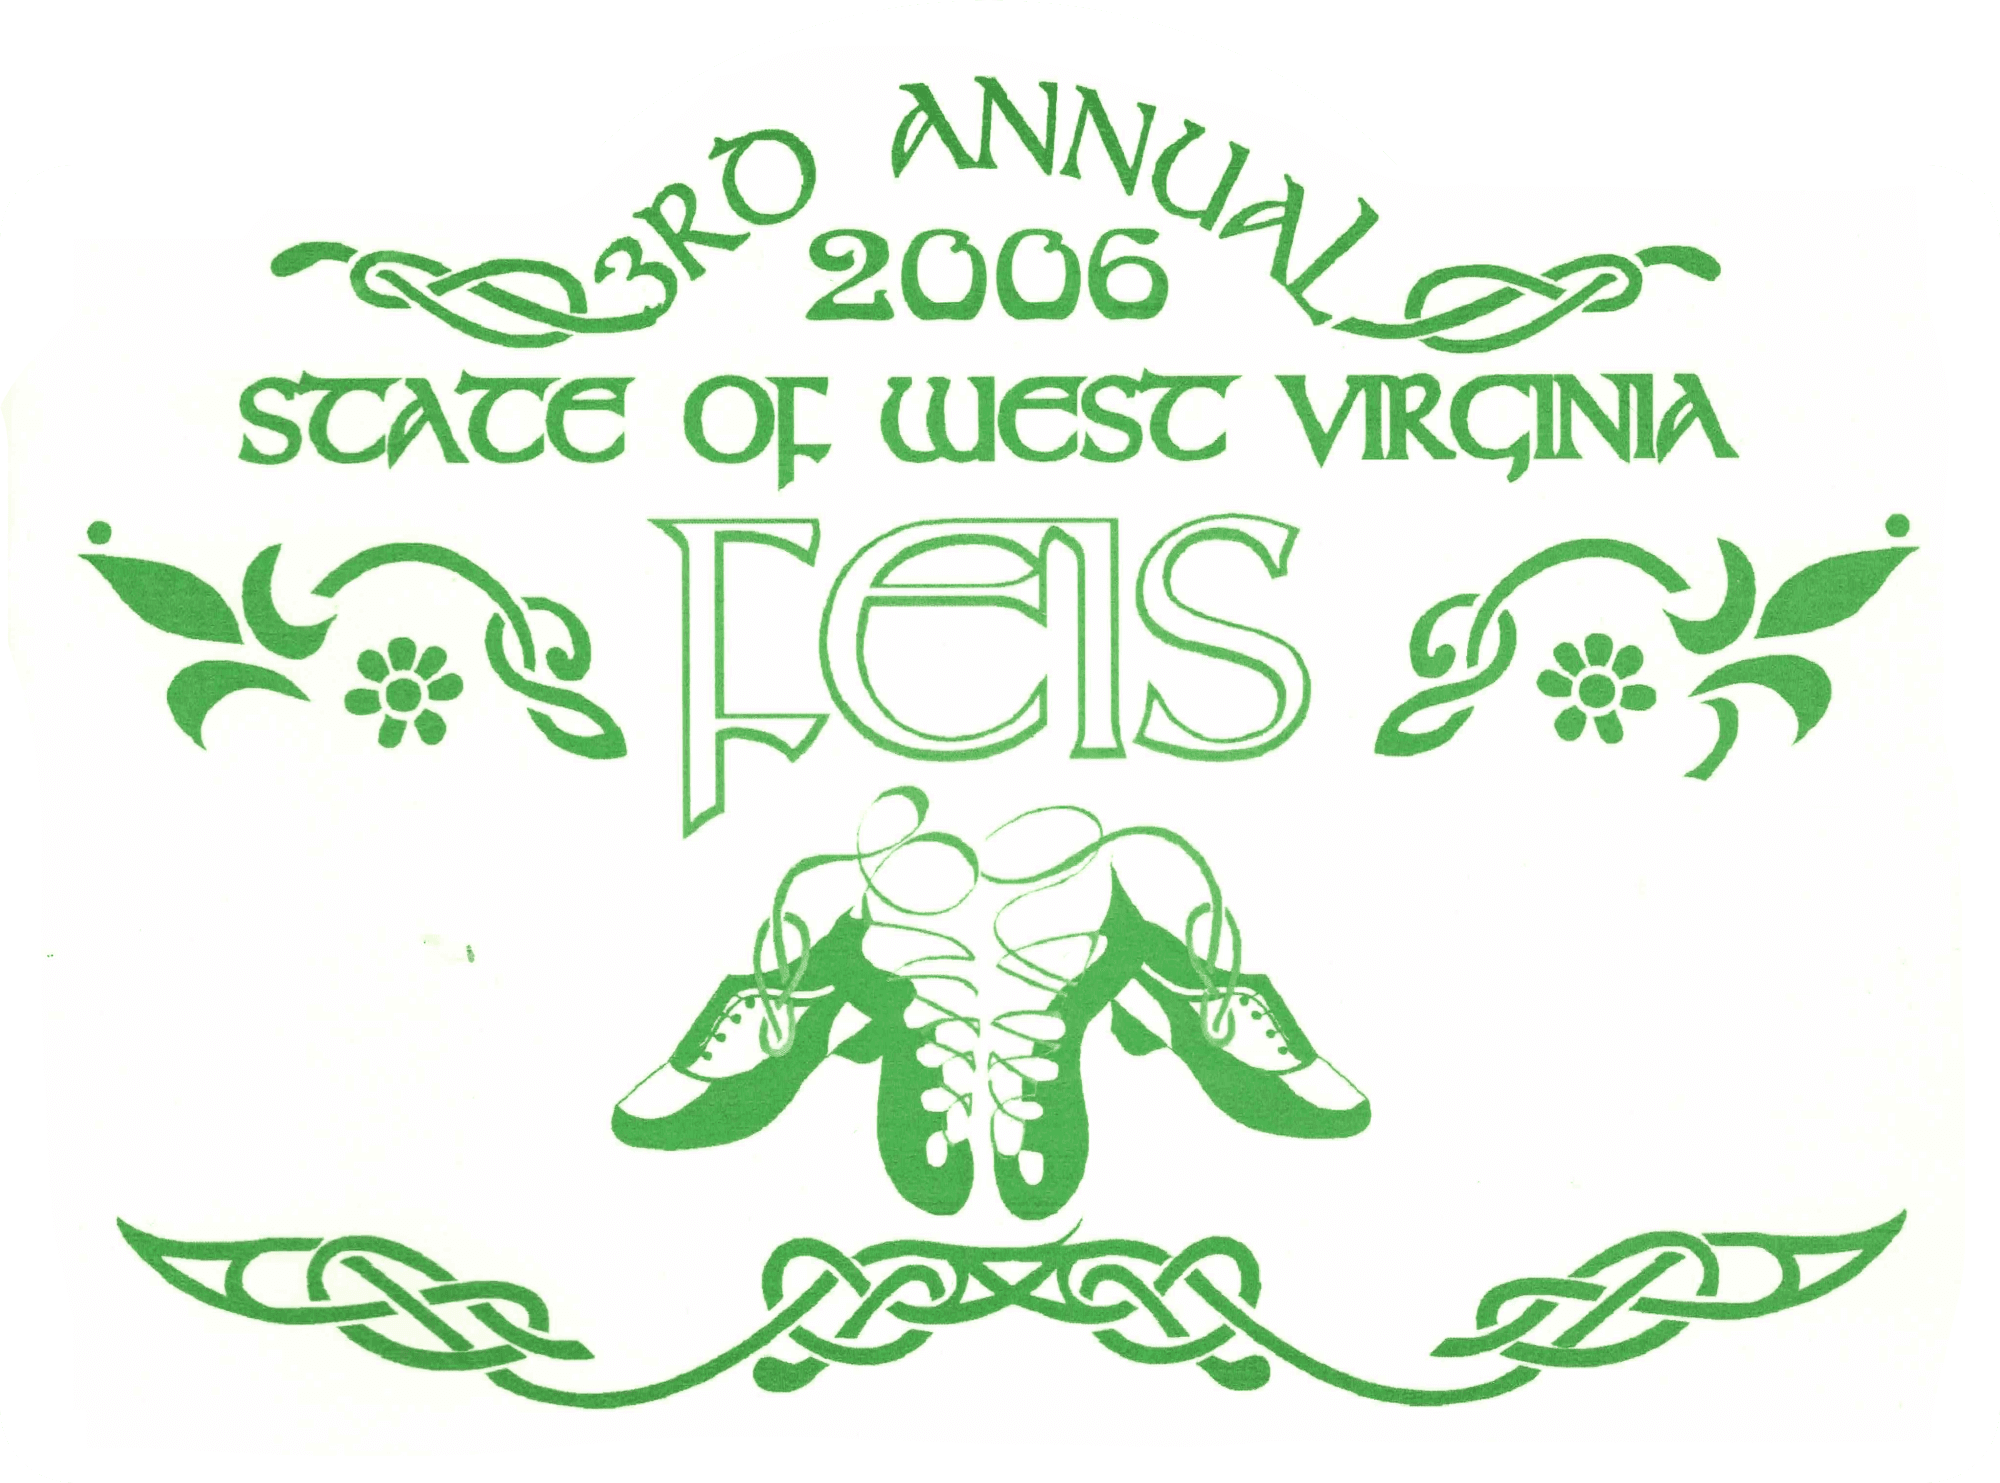 logo for West Virginia Feis